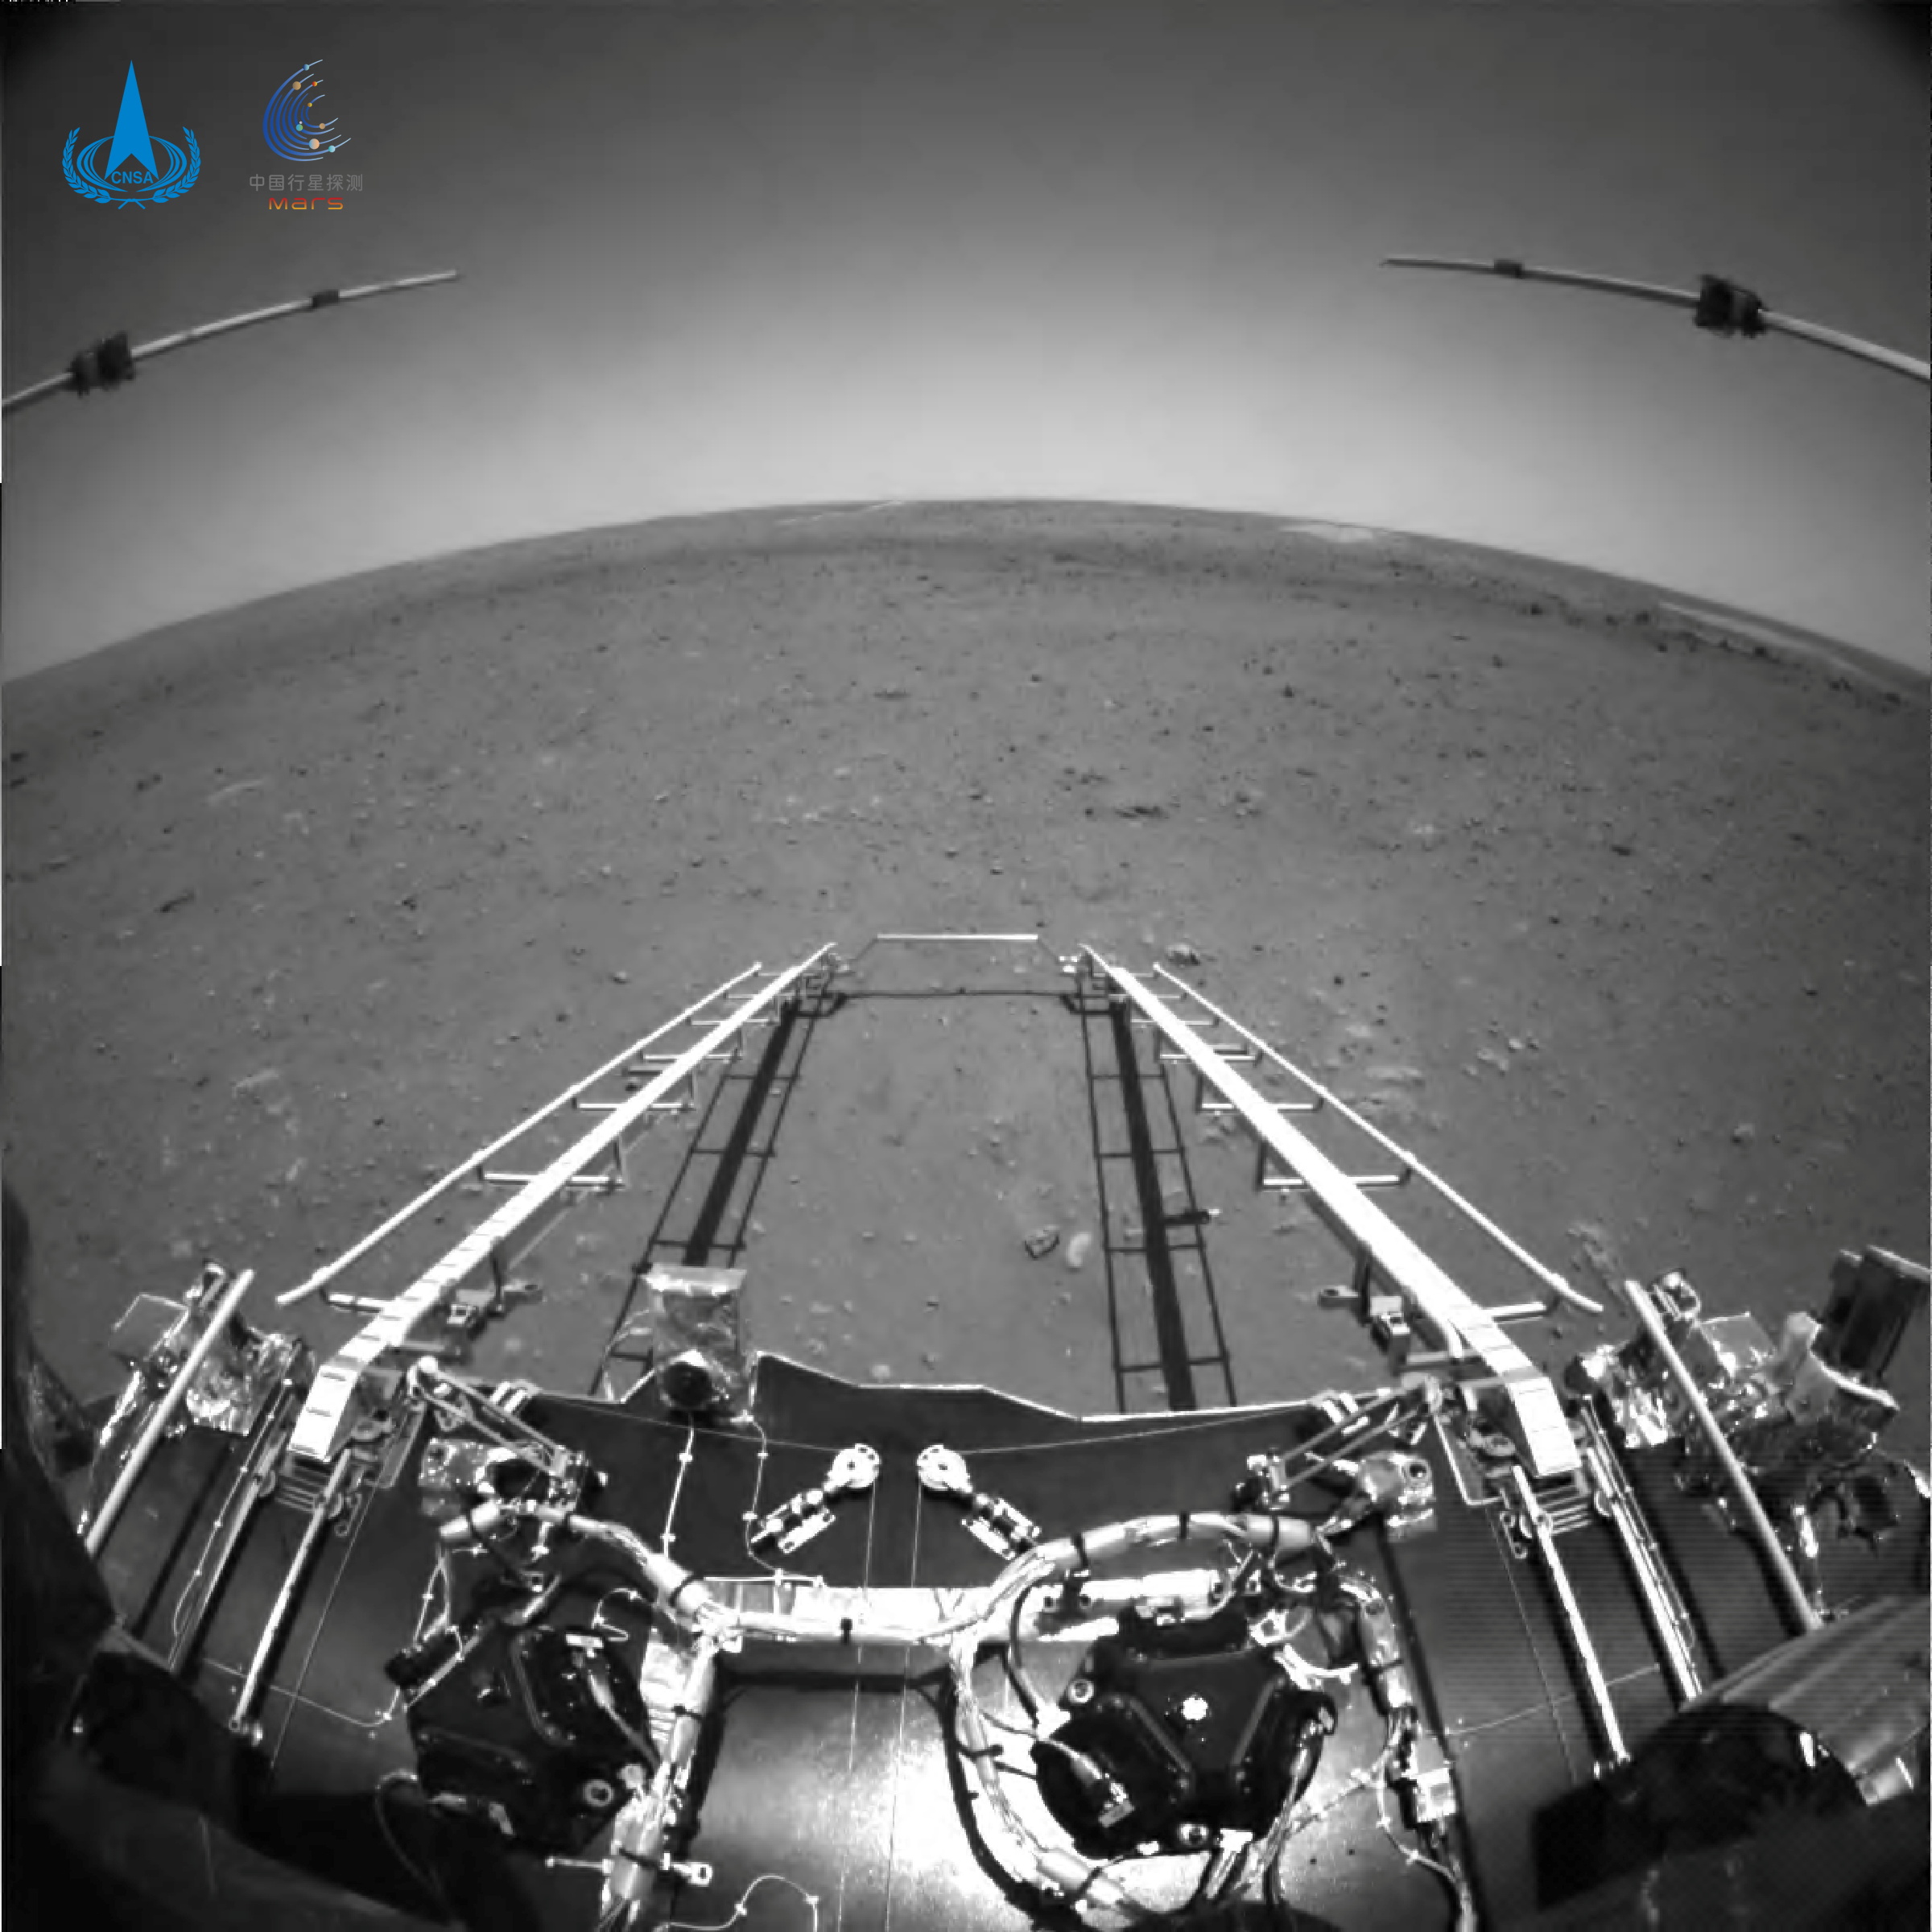 Το κινέζικο «Ζουρόνγκ» πάτησε στον πλανήτη Άρη – Εντυπωσιακές εικόνες - ΠΕΡΙΕΡΓΑ